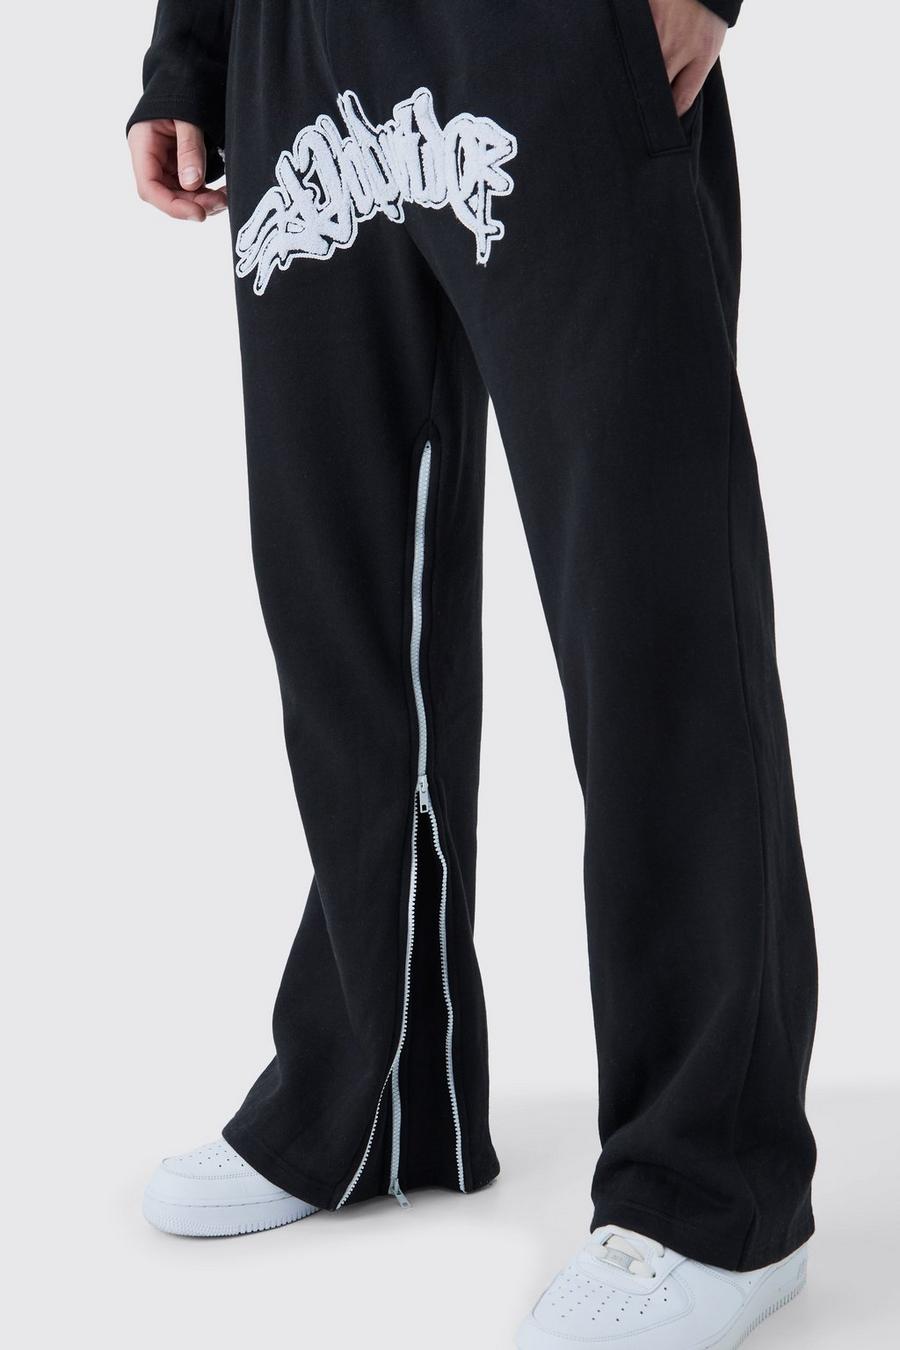 Pantaloni tuta Worldwide con inserti, applique e zip, Black